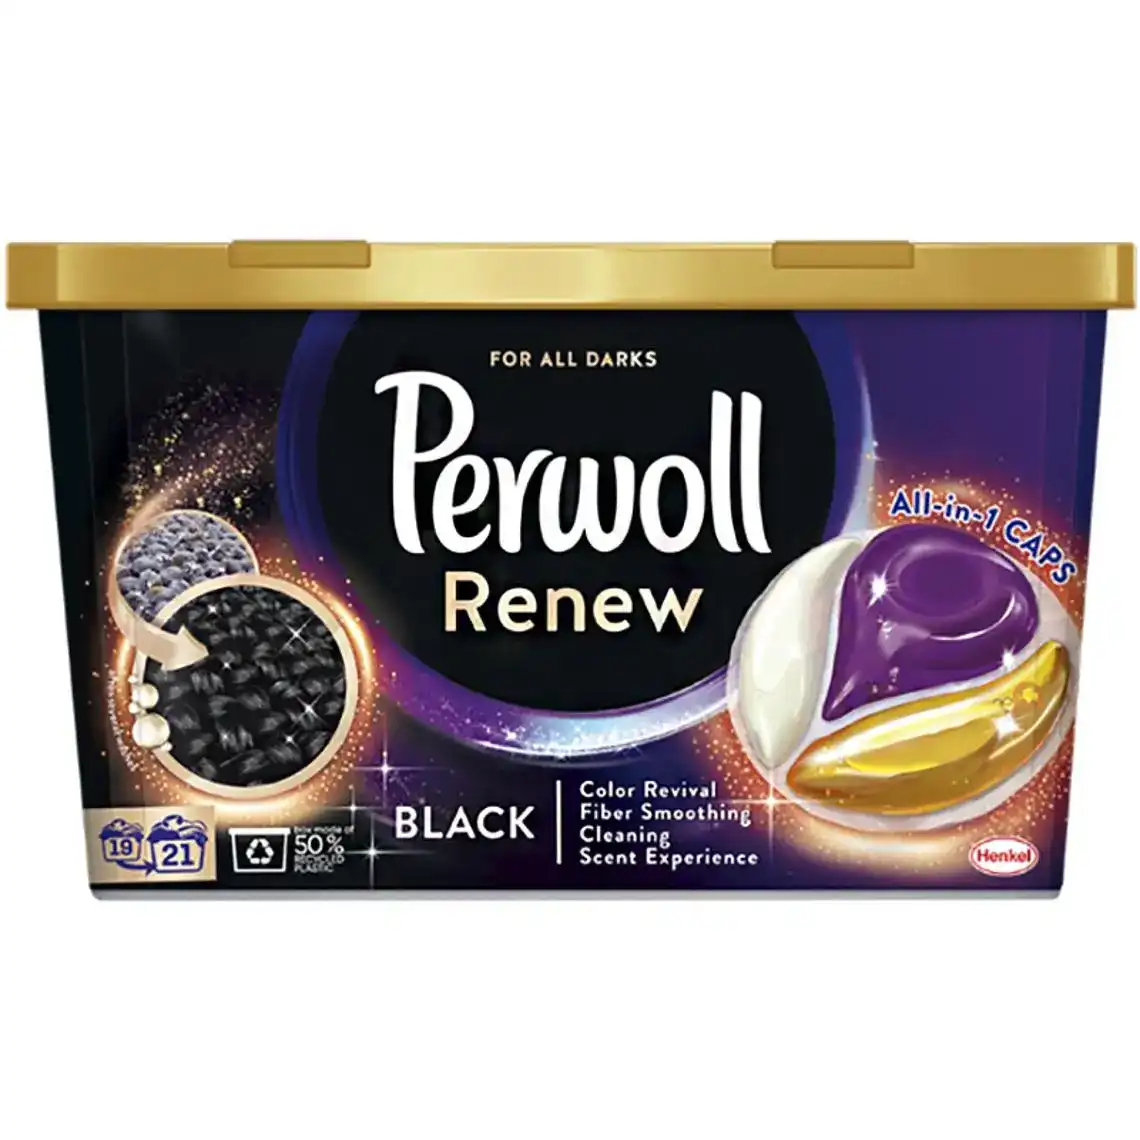 Фото 1 - Гель-капсули для прання Perwoll Renew Black для темних та чорних речей 21 шт